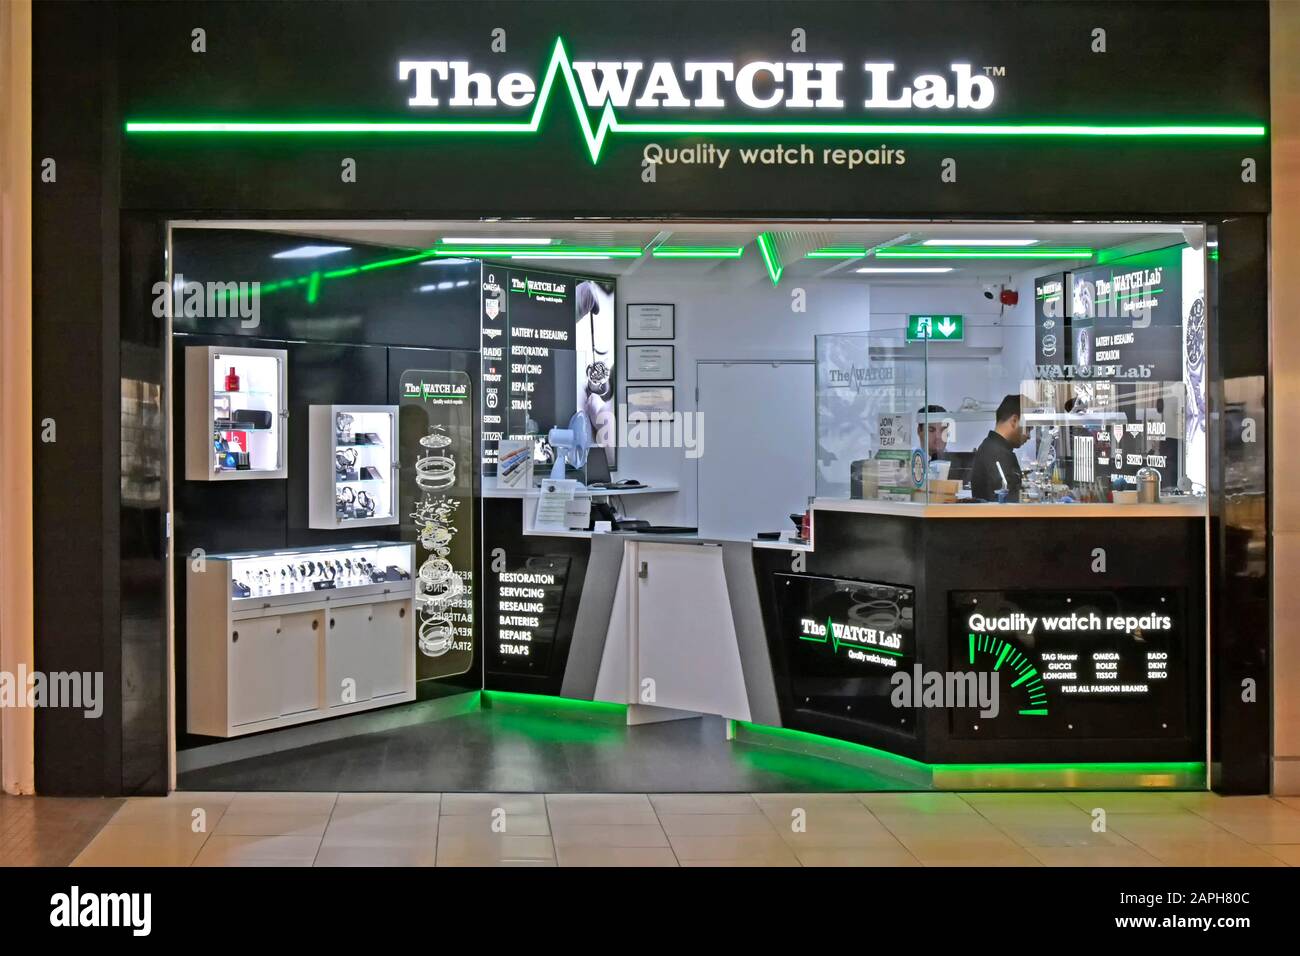 Open plan Watch Lab Shop front pour l'entreprise exploitant des activités de réparation et de vente au détail dans le centre commercial Intu Lakeside à Thurrock Essex Angleterre Royaume-Uni Banque D'Images